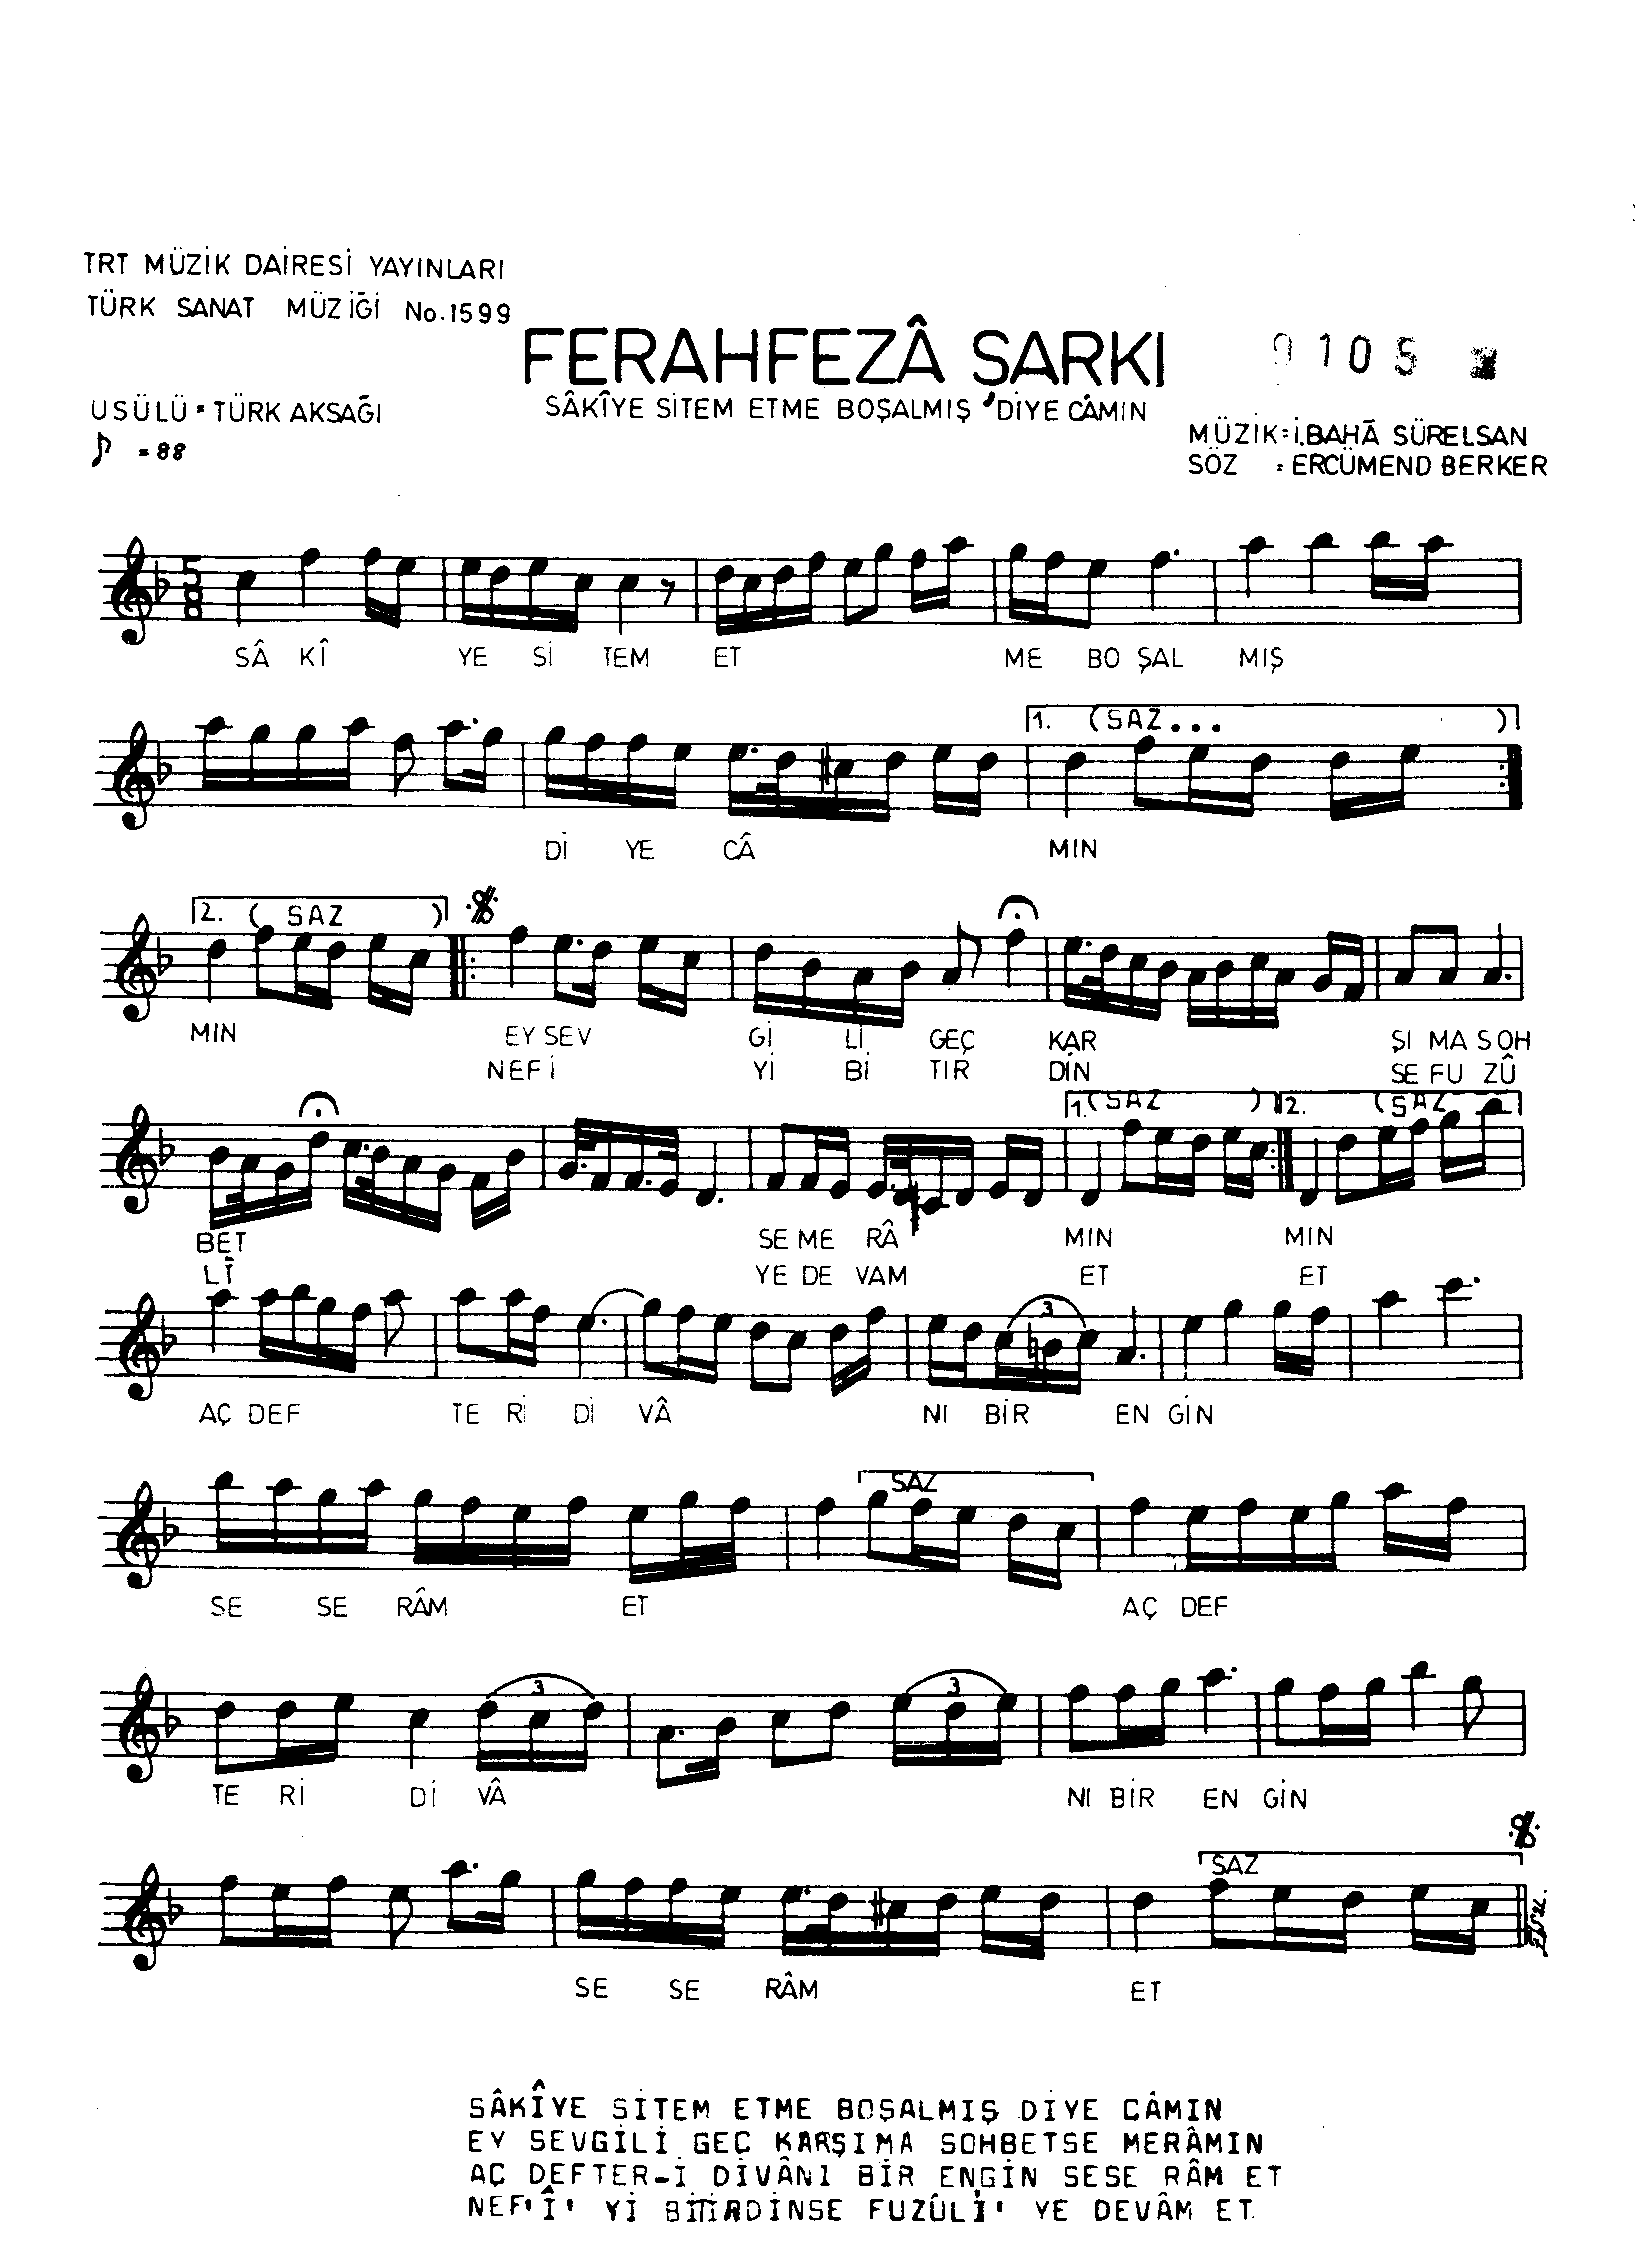 Ferah-Fezâ - Şarkı - İsmail Baha Sürelsan - Sayfa 1